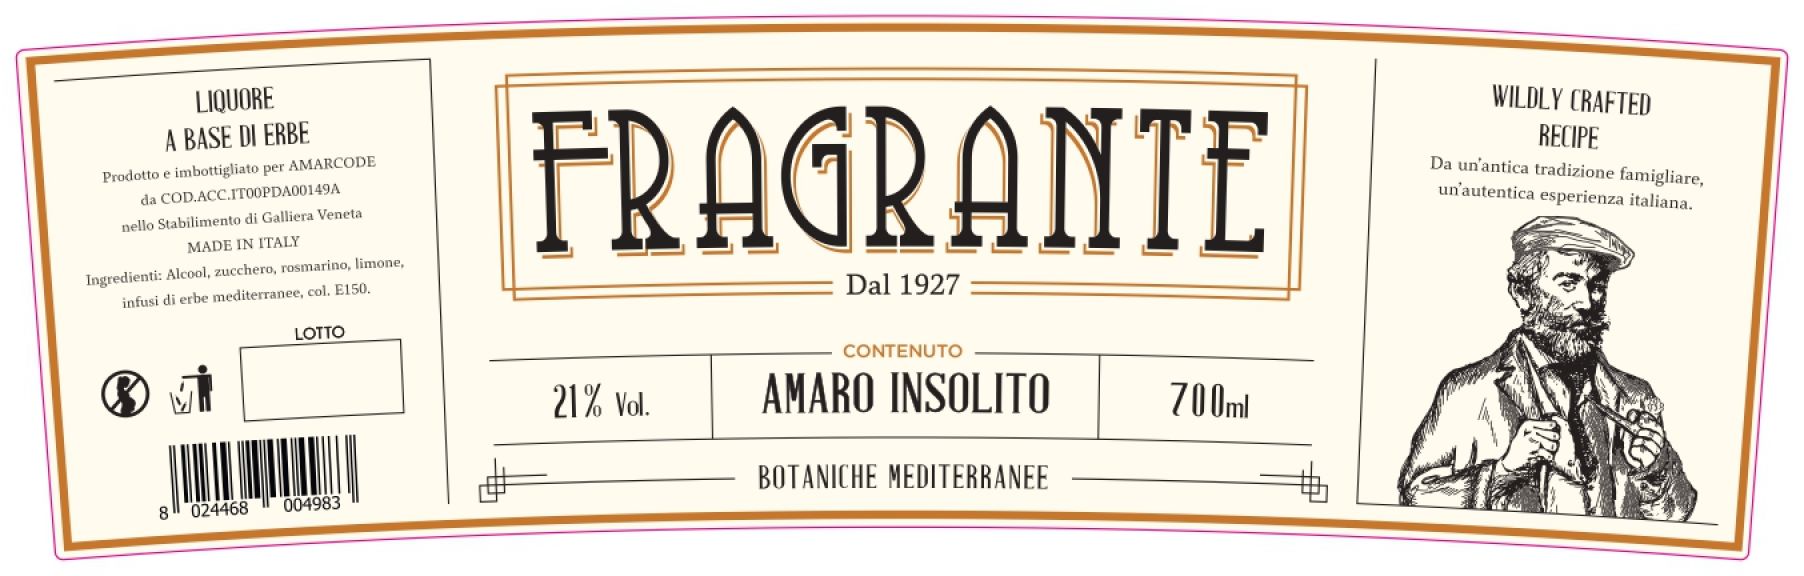 Photo for: Fragrante - Amaro Insolito